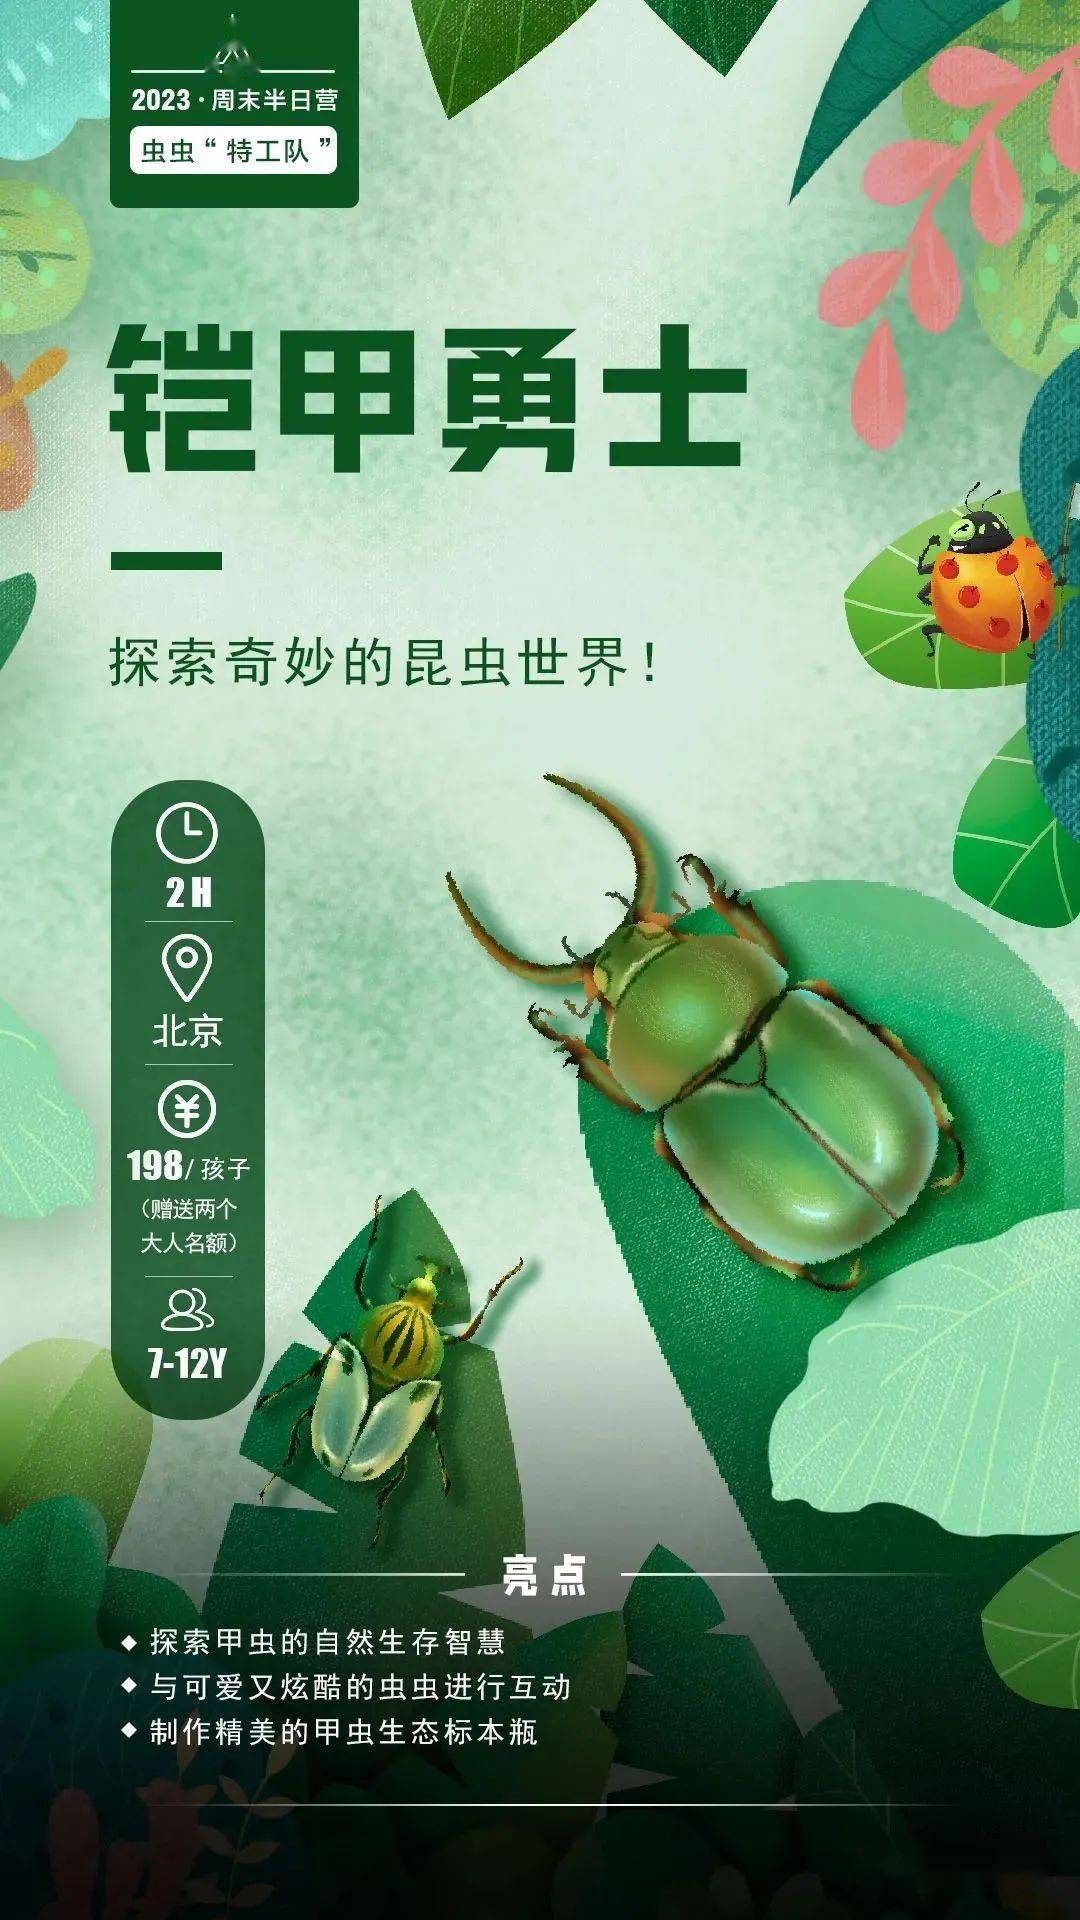 让孩子与甲虫零距离接触！制作甲虫生态标本，还可带走哦！_手机搜狐网